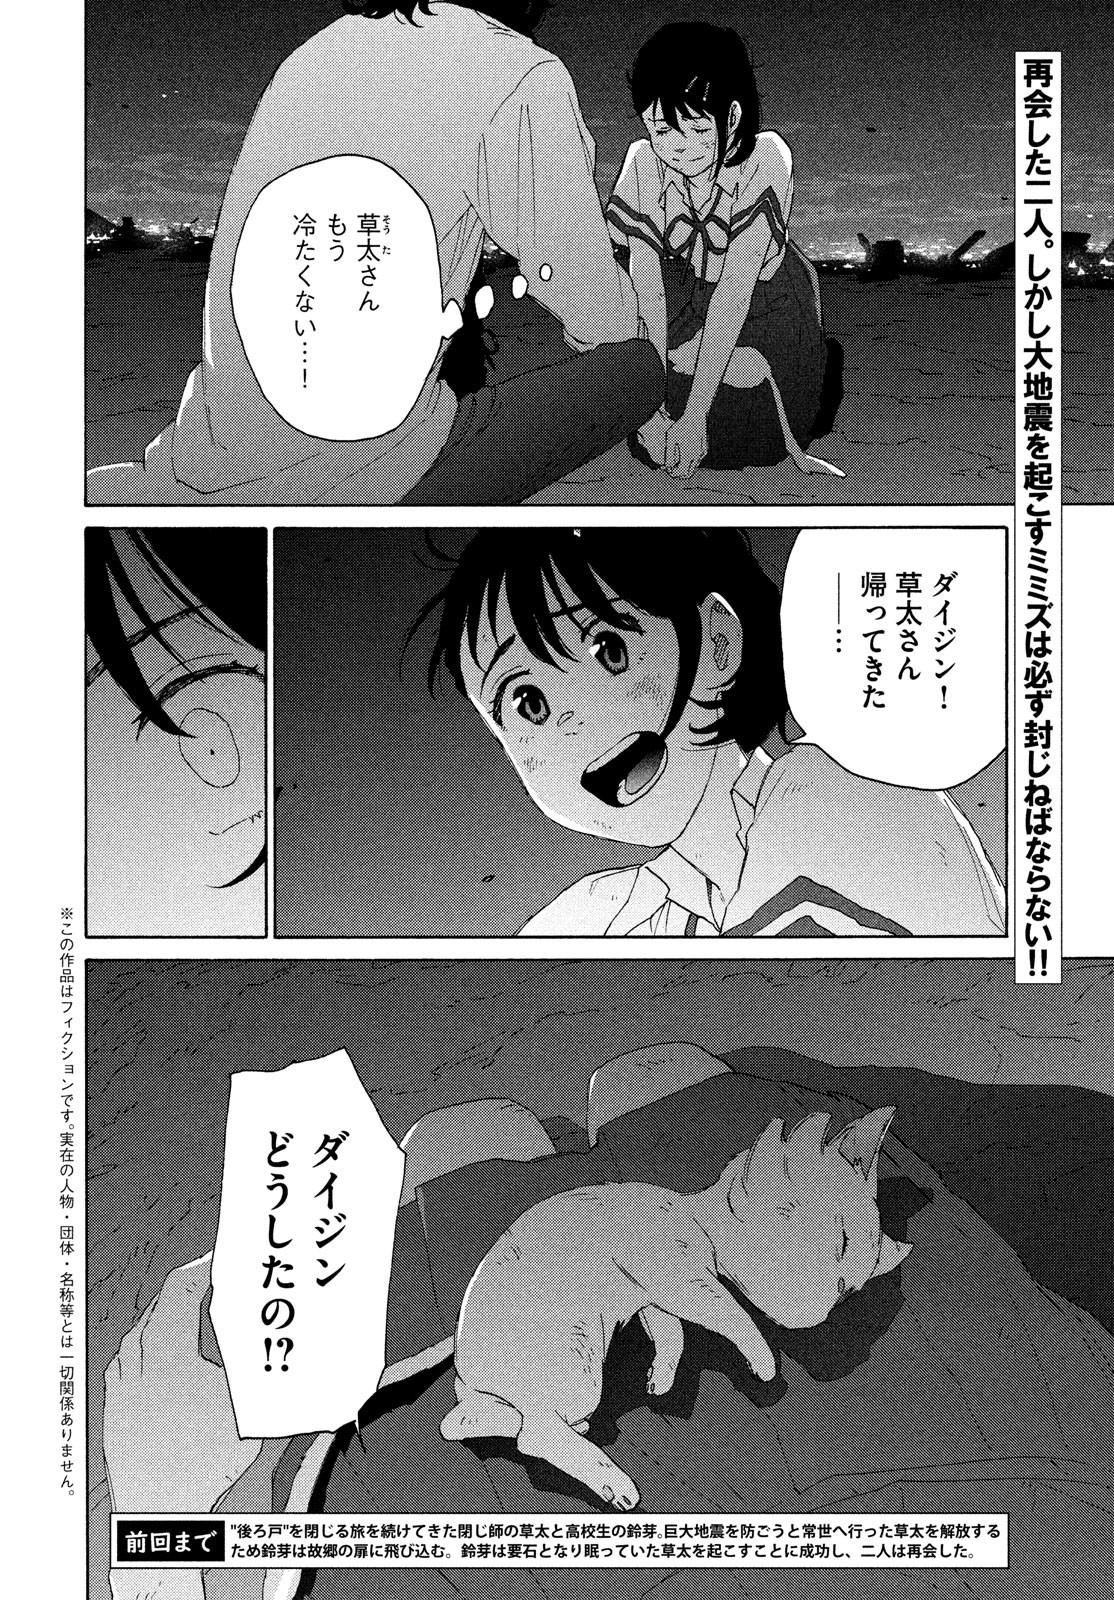 Suzume no Tojimari - Chapter 15 - Page 2